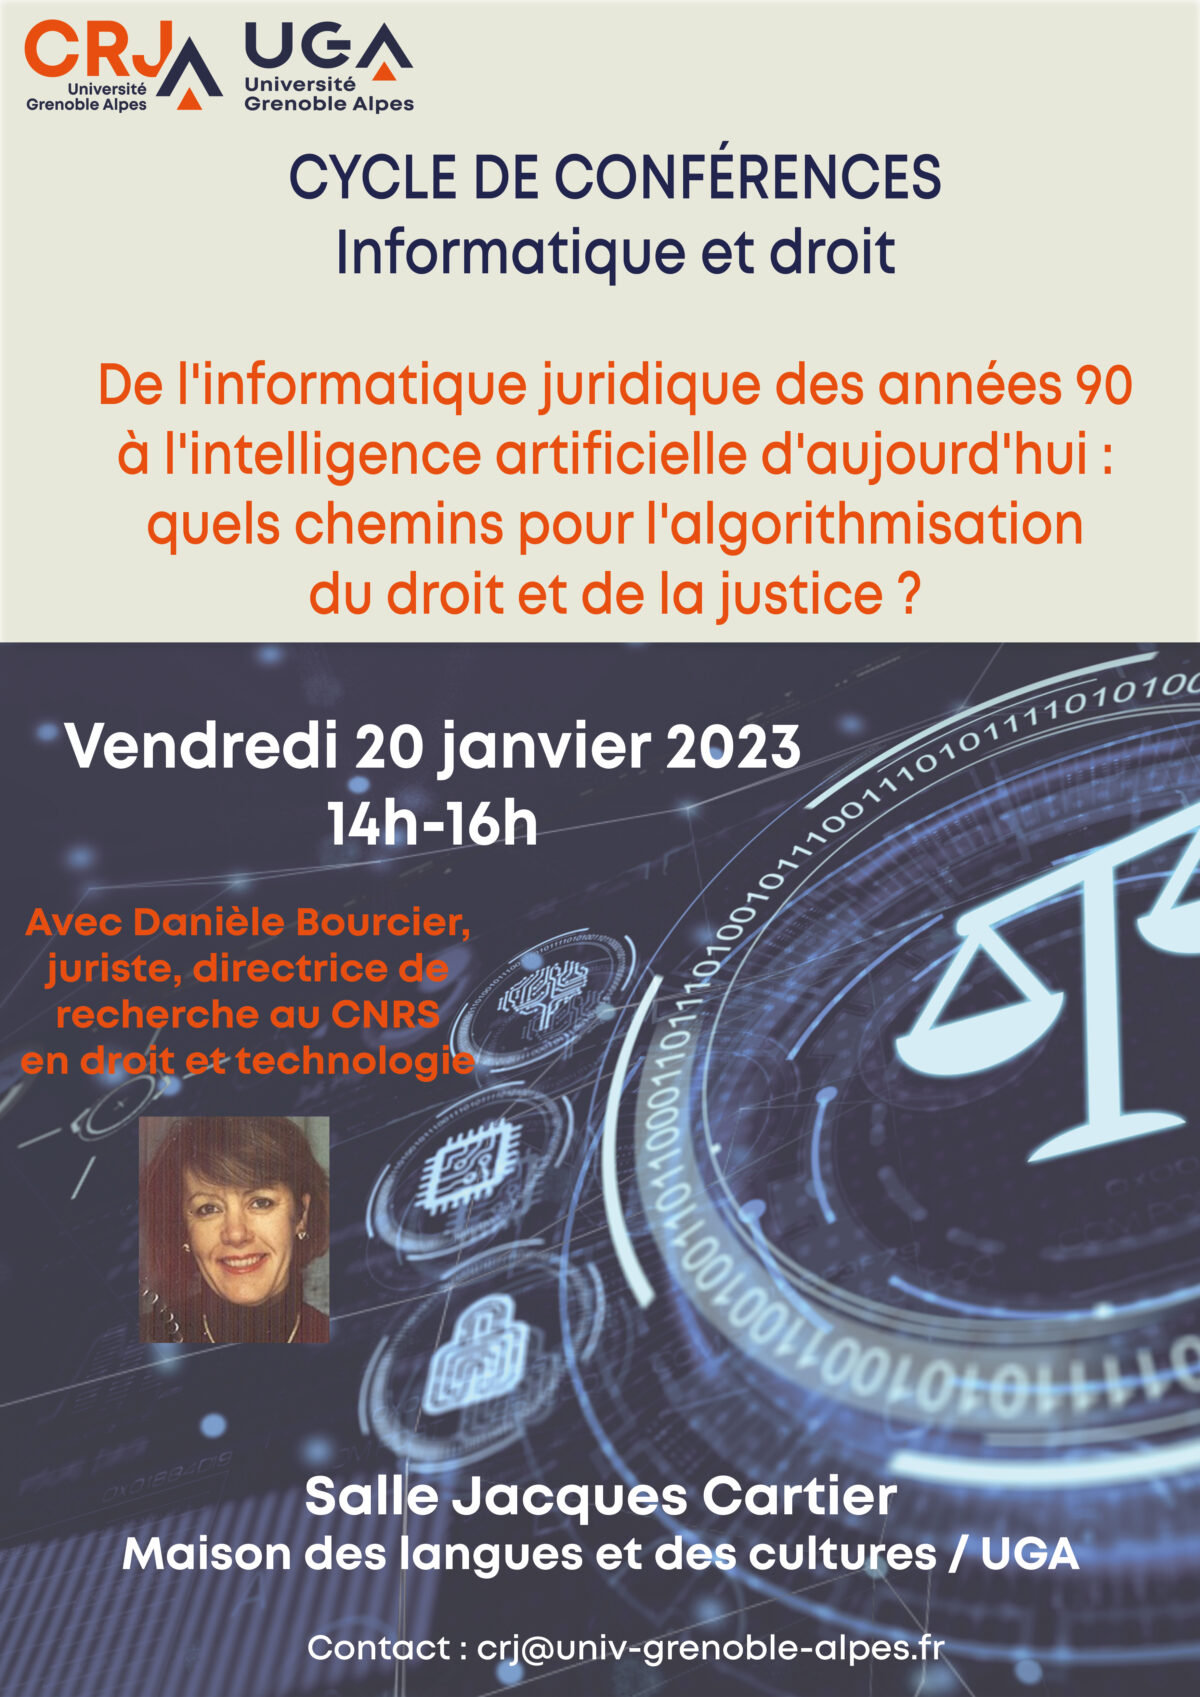 Projet JADE : conférence de Danièle Bourcier le 20/01/2023, « De l’informatique juridique des années 90 à l’intelligence artificielle d’aujourd’hui : quels chemins pour l’algorithmisation du droit et de la justice ? ».